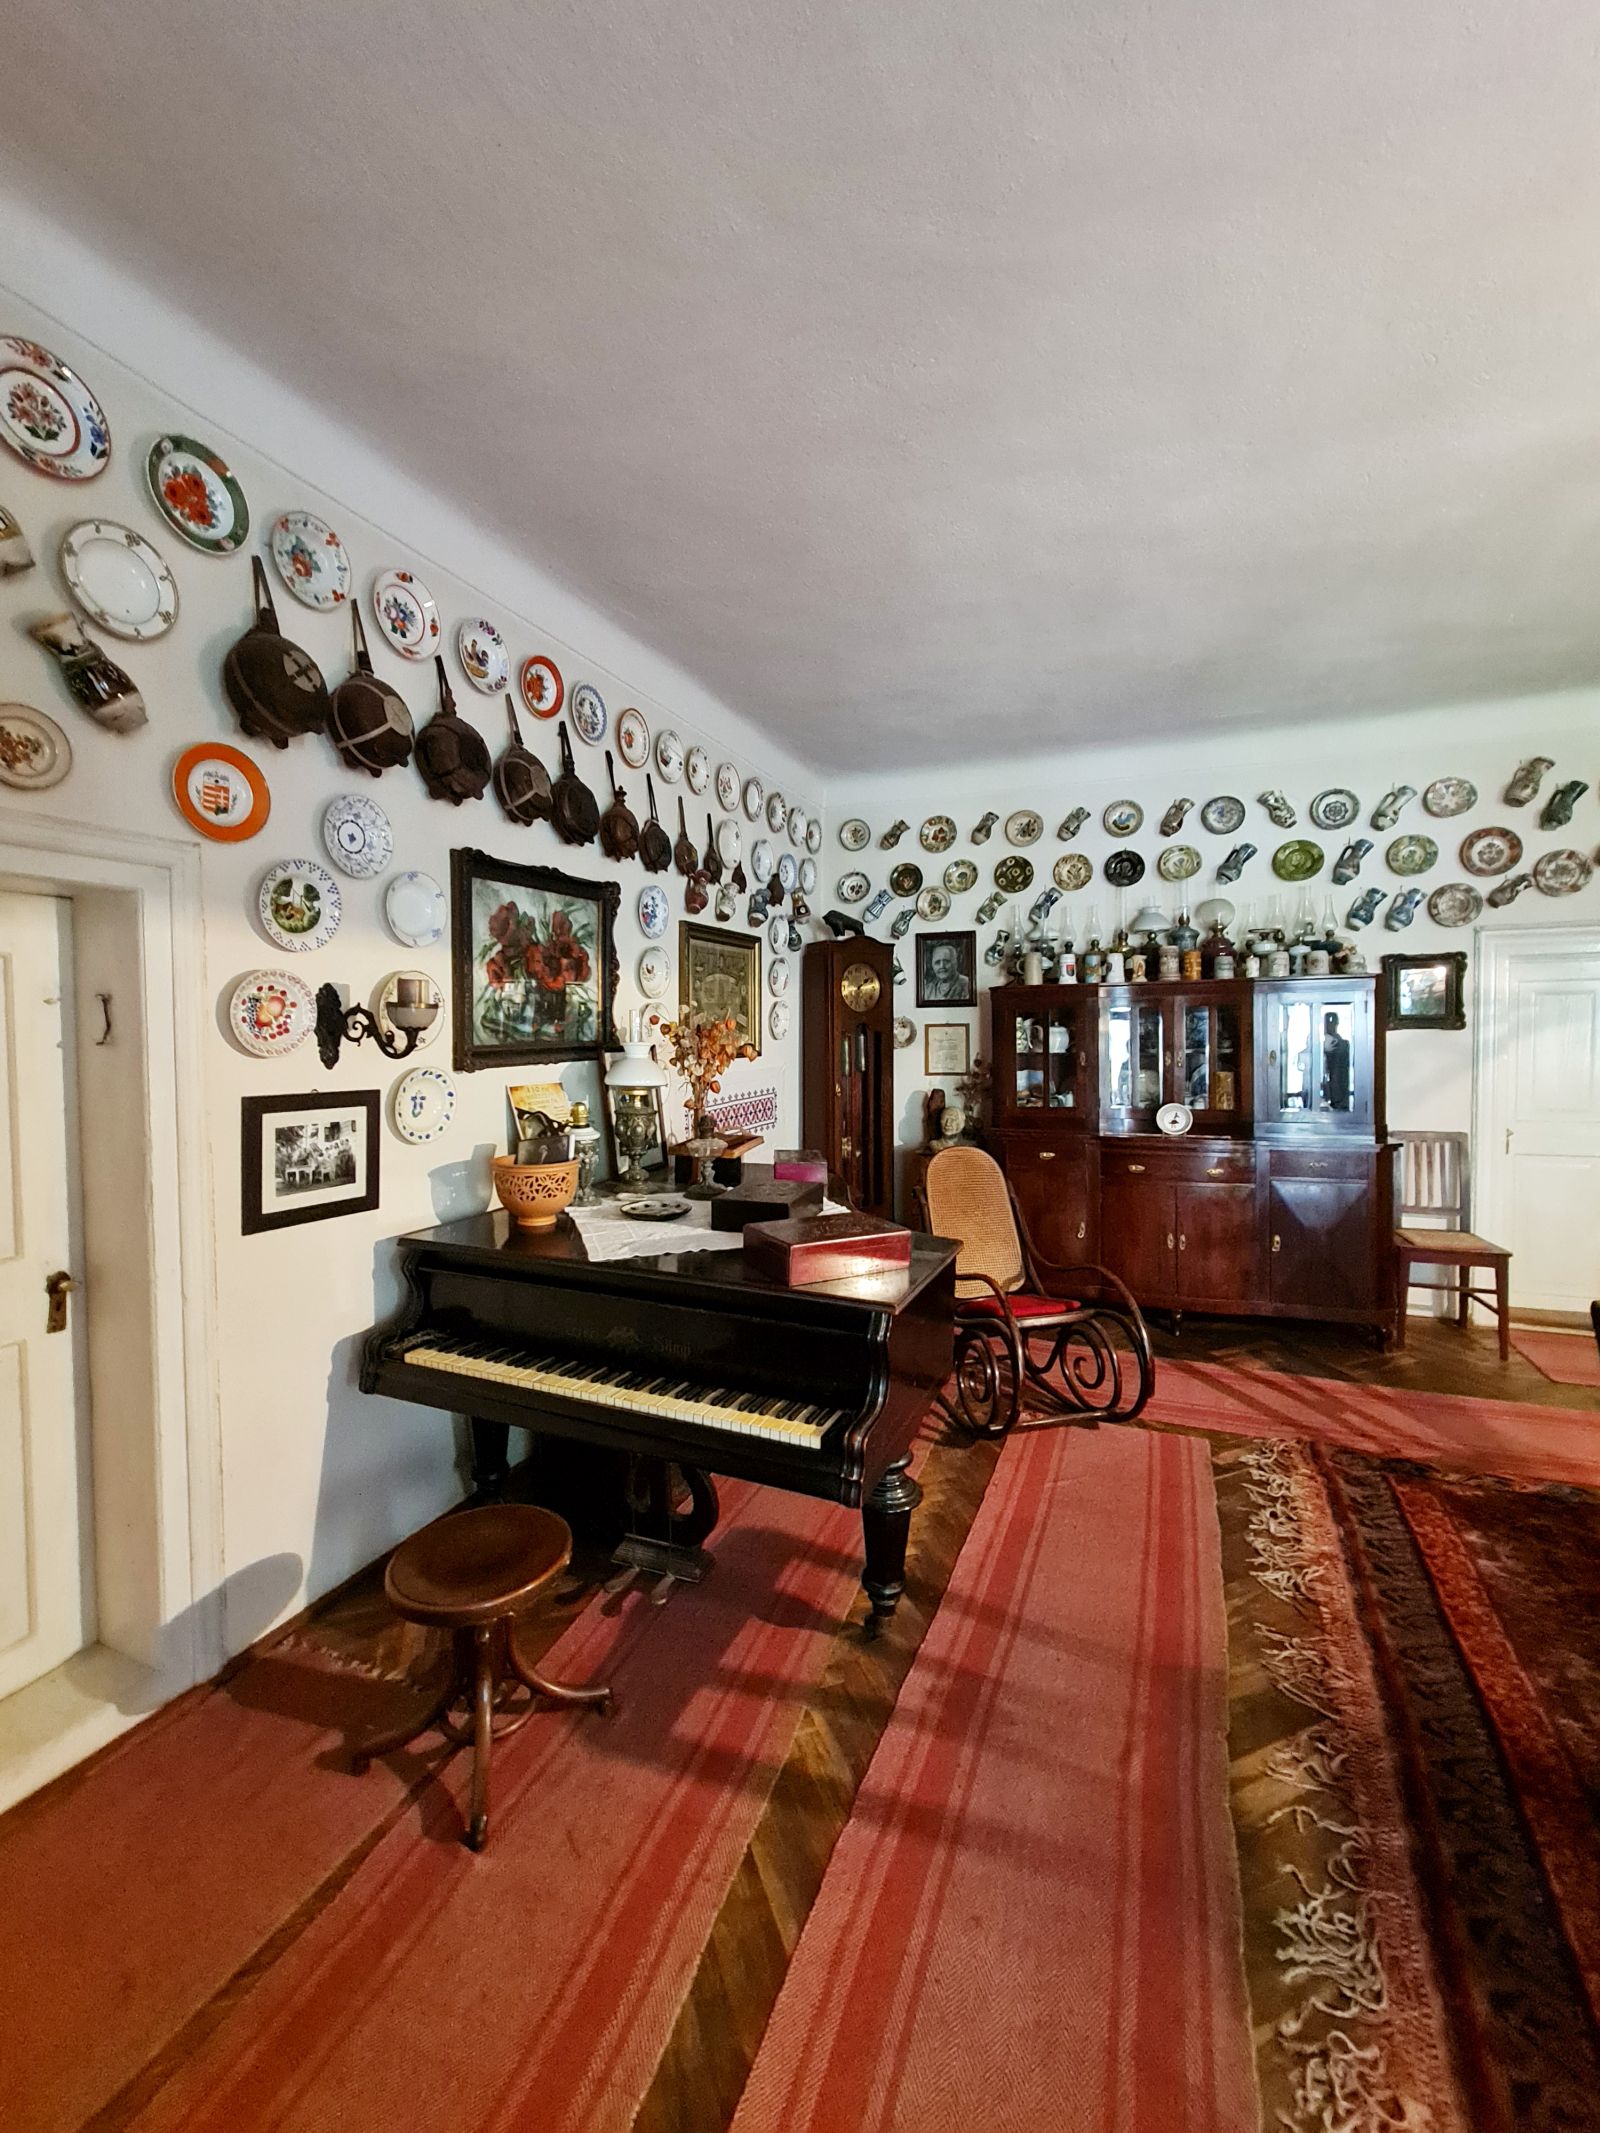 Într-o parte a camerei este și un pian, la care mai cântă din când în când câteun membru al familie.